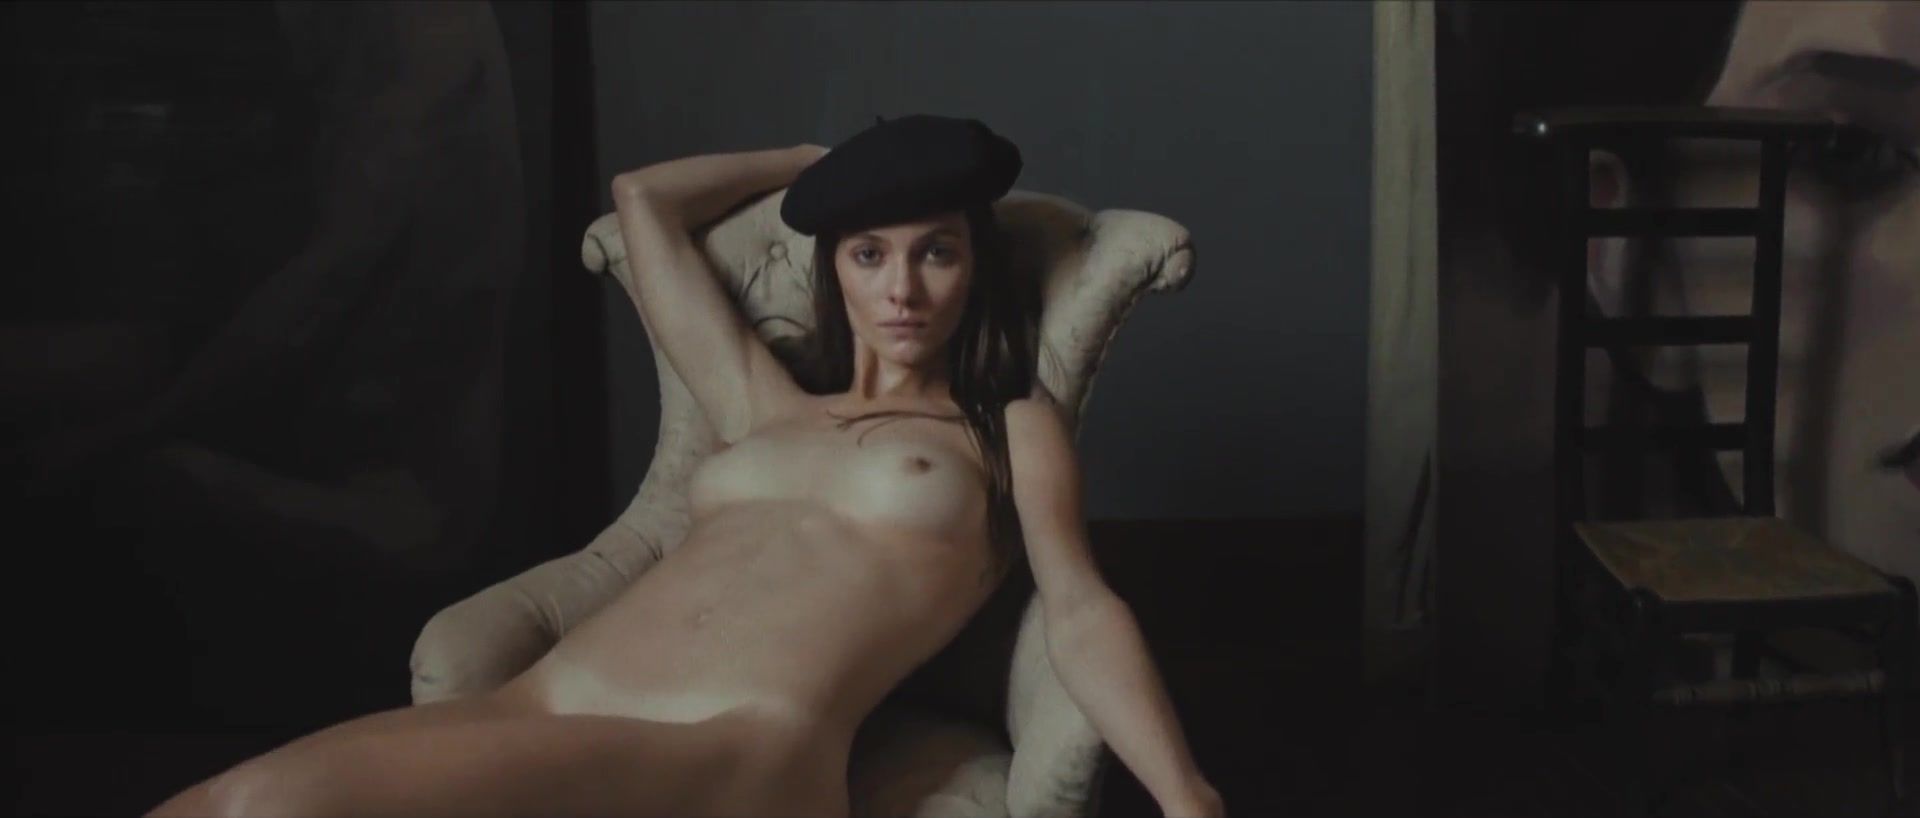 iWank Art French Nudity Scene "La Fille d’Herode" Ssbbw - 1